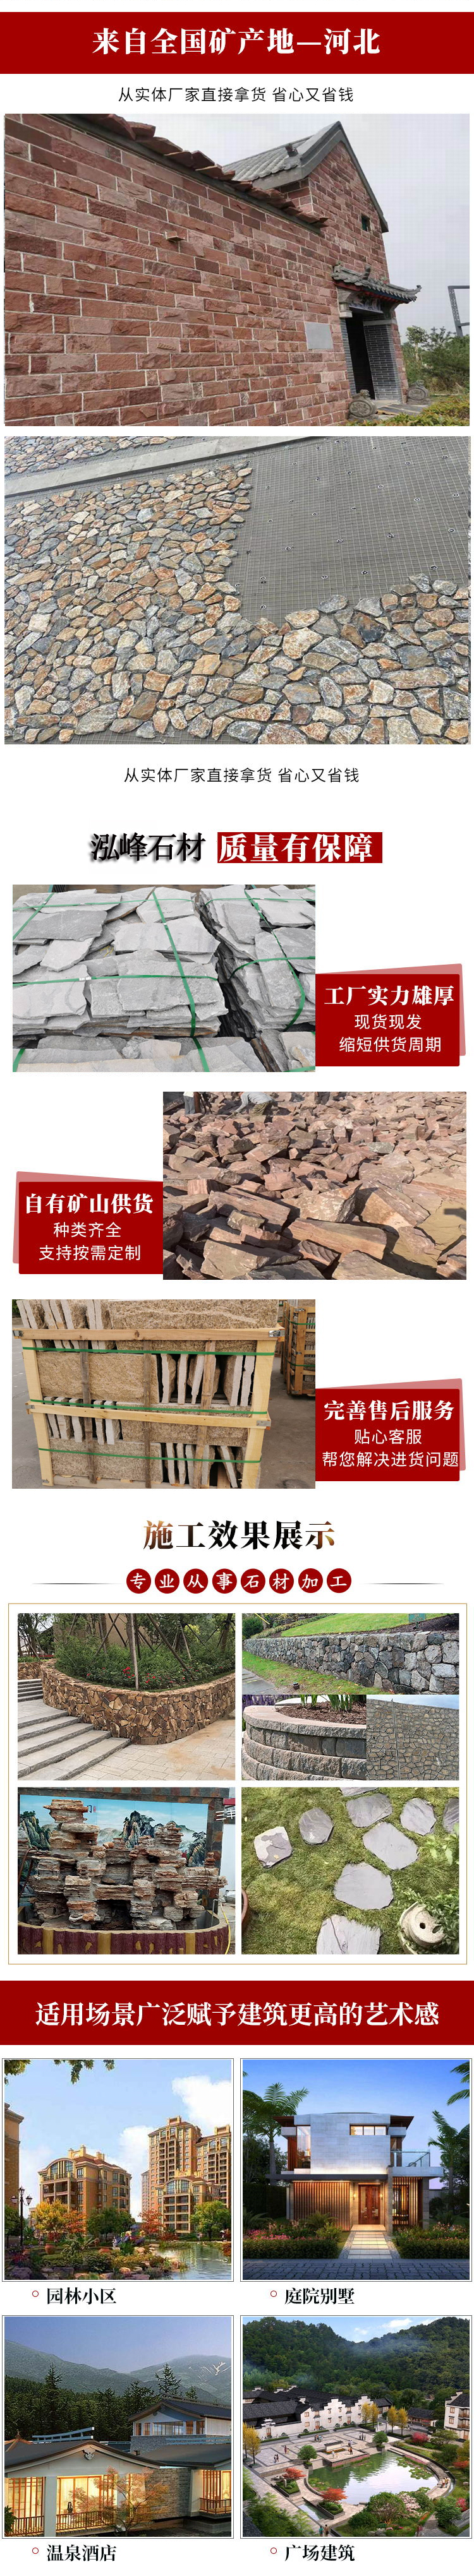 天然文化石生产厂家-泓峰石材